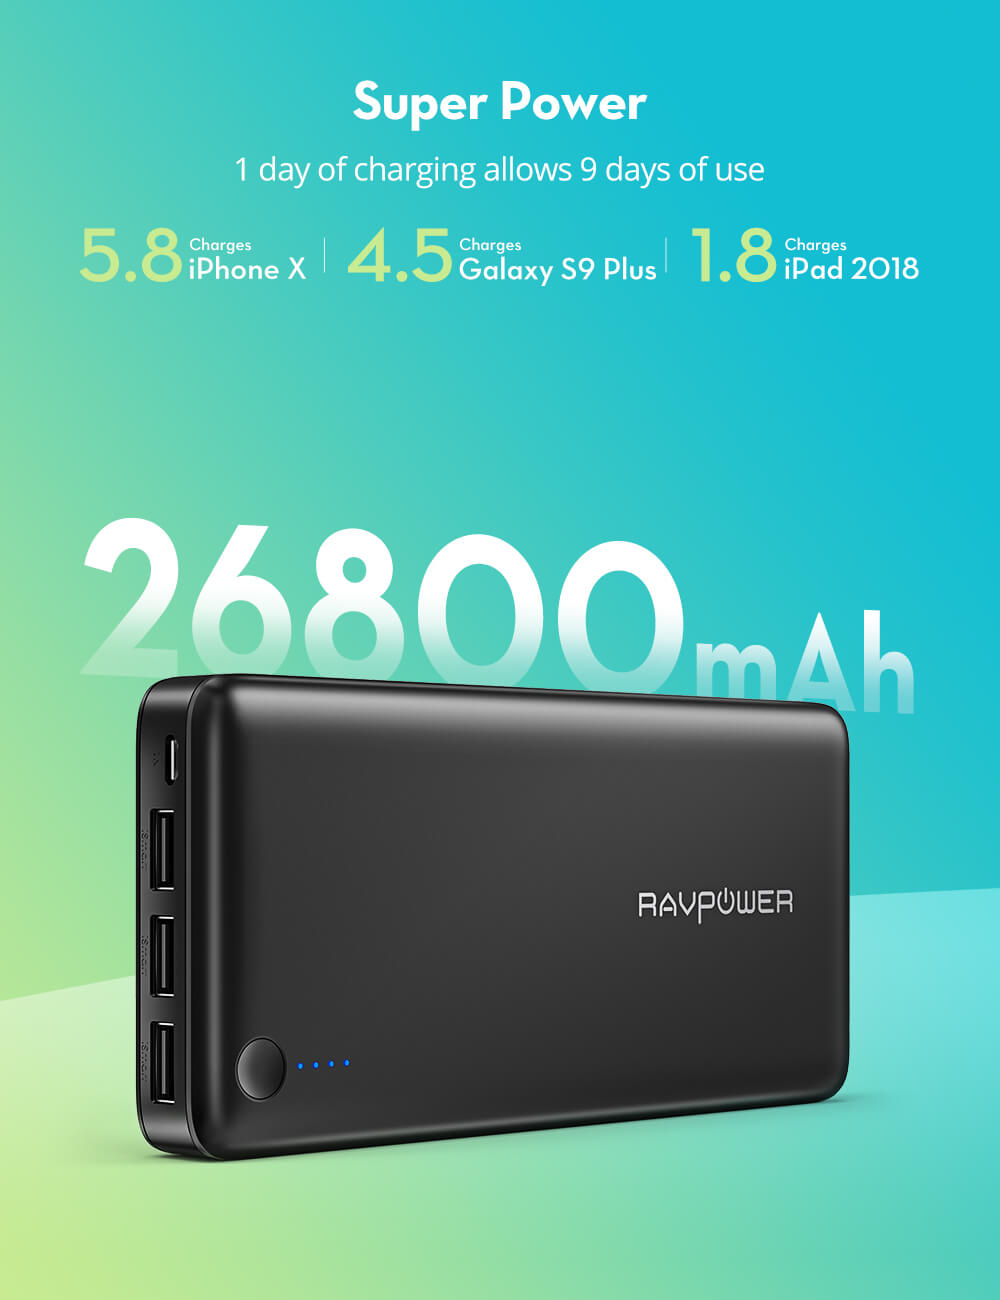 Bon plan : une batterie RAVPower de 26800 mAh à moins de 42 euros